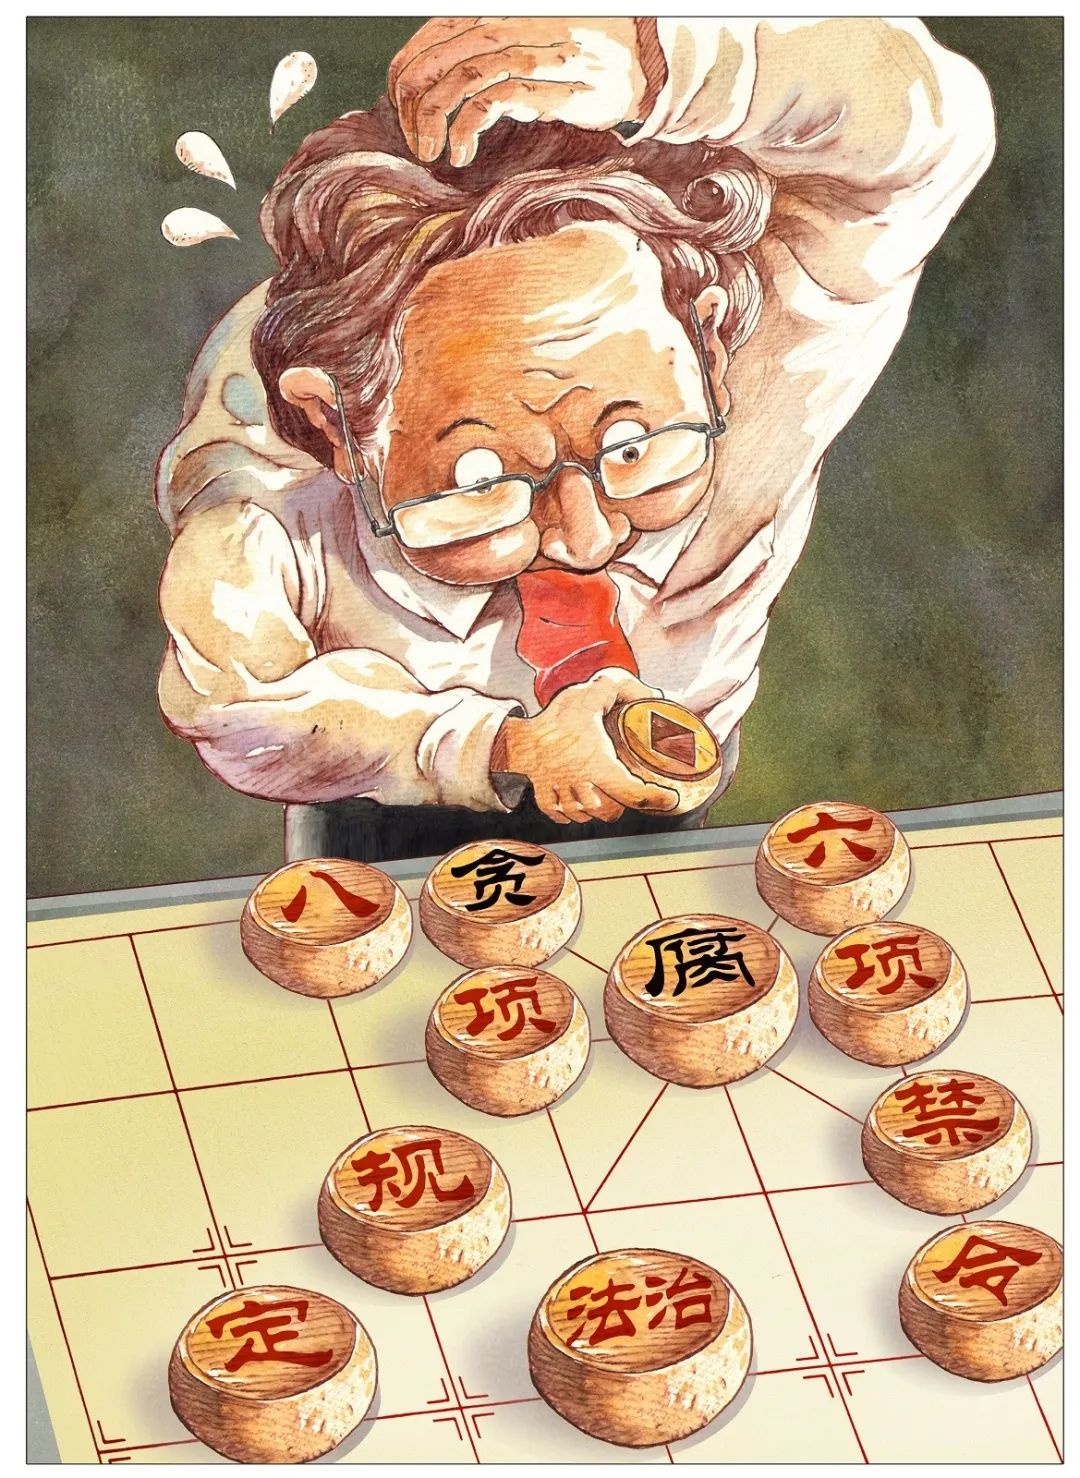 廉石清风·再燃激情 创元杯2020中国(苏州)廉政漫画大赛公示作品